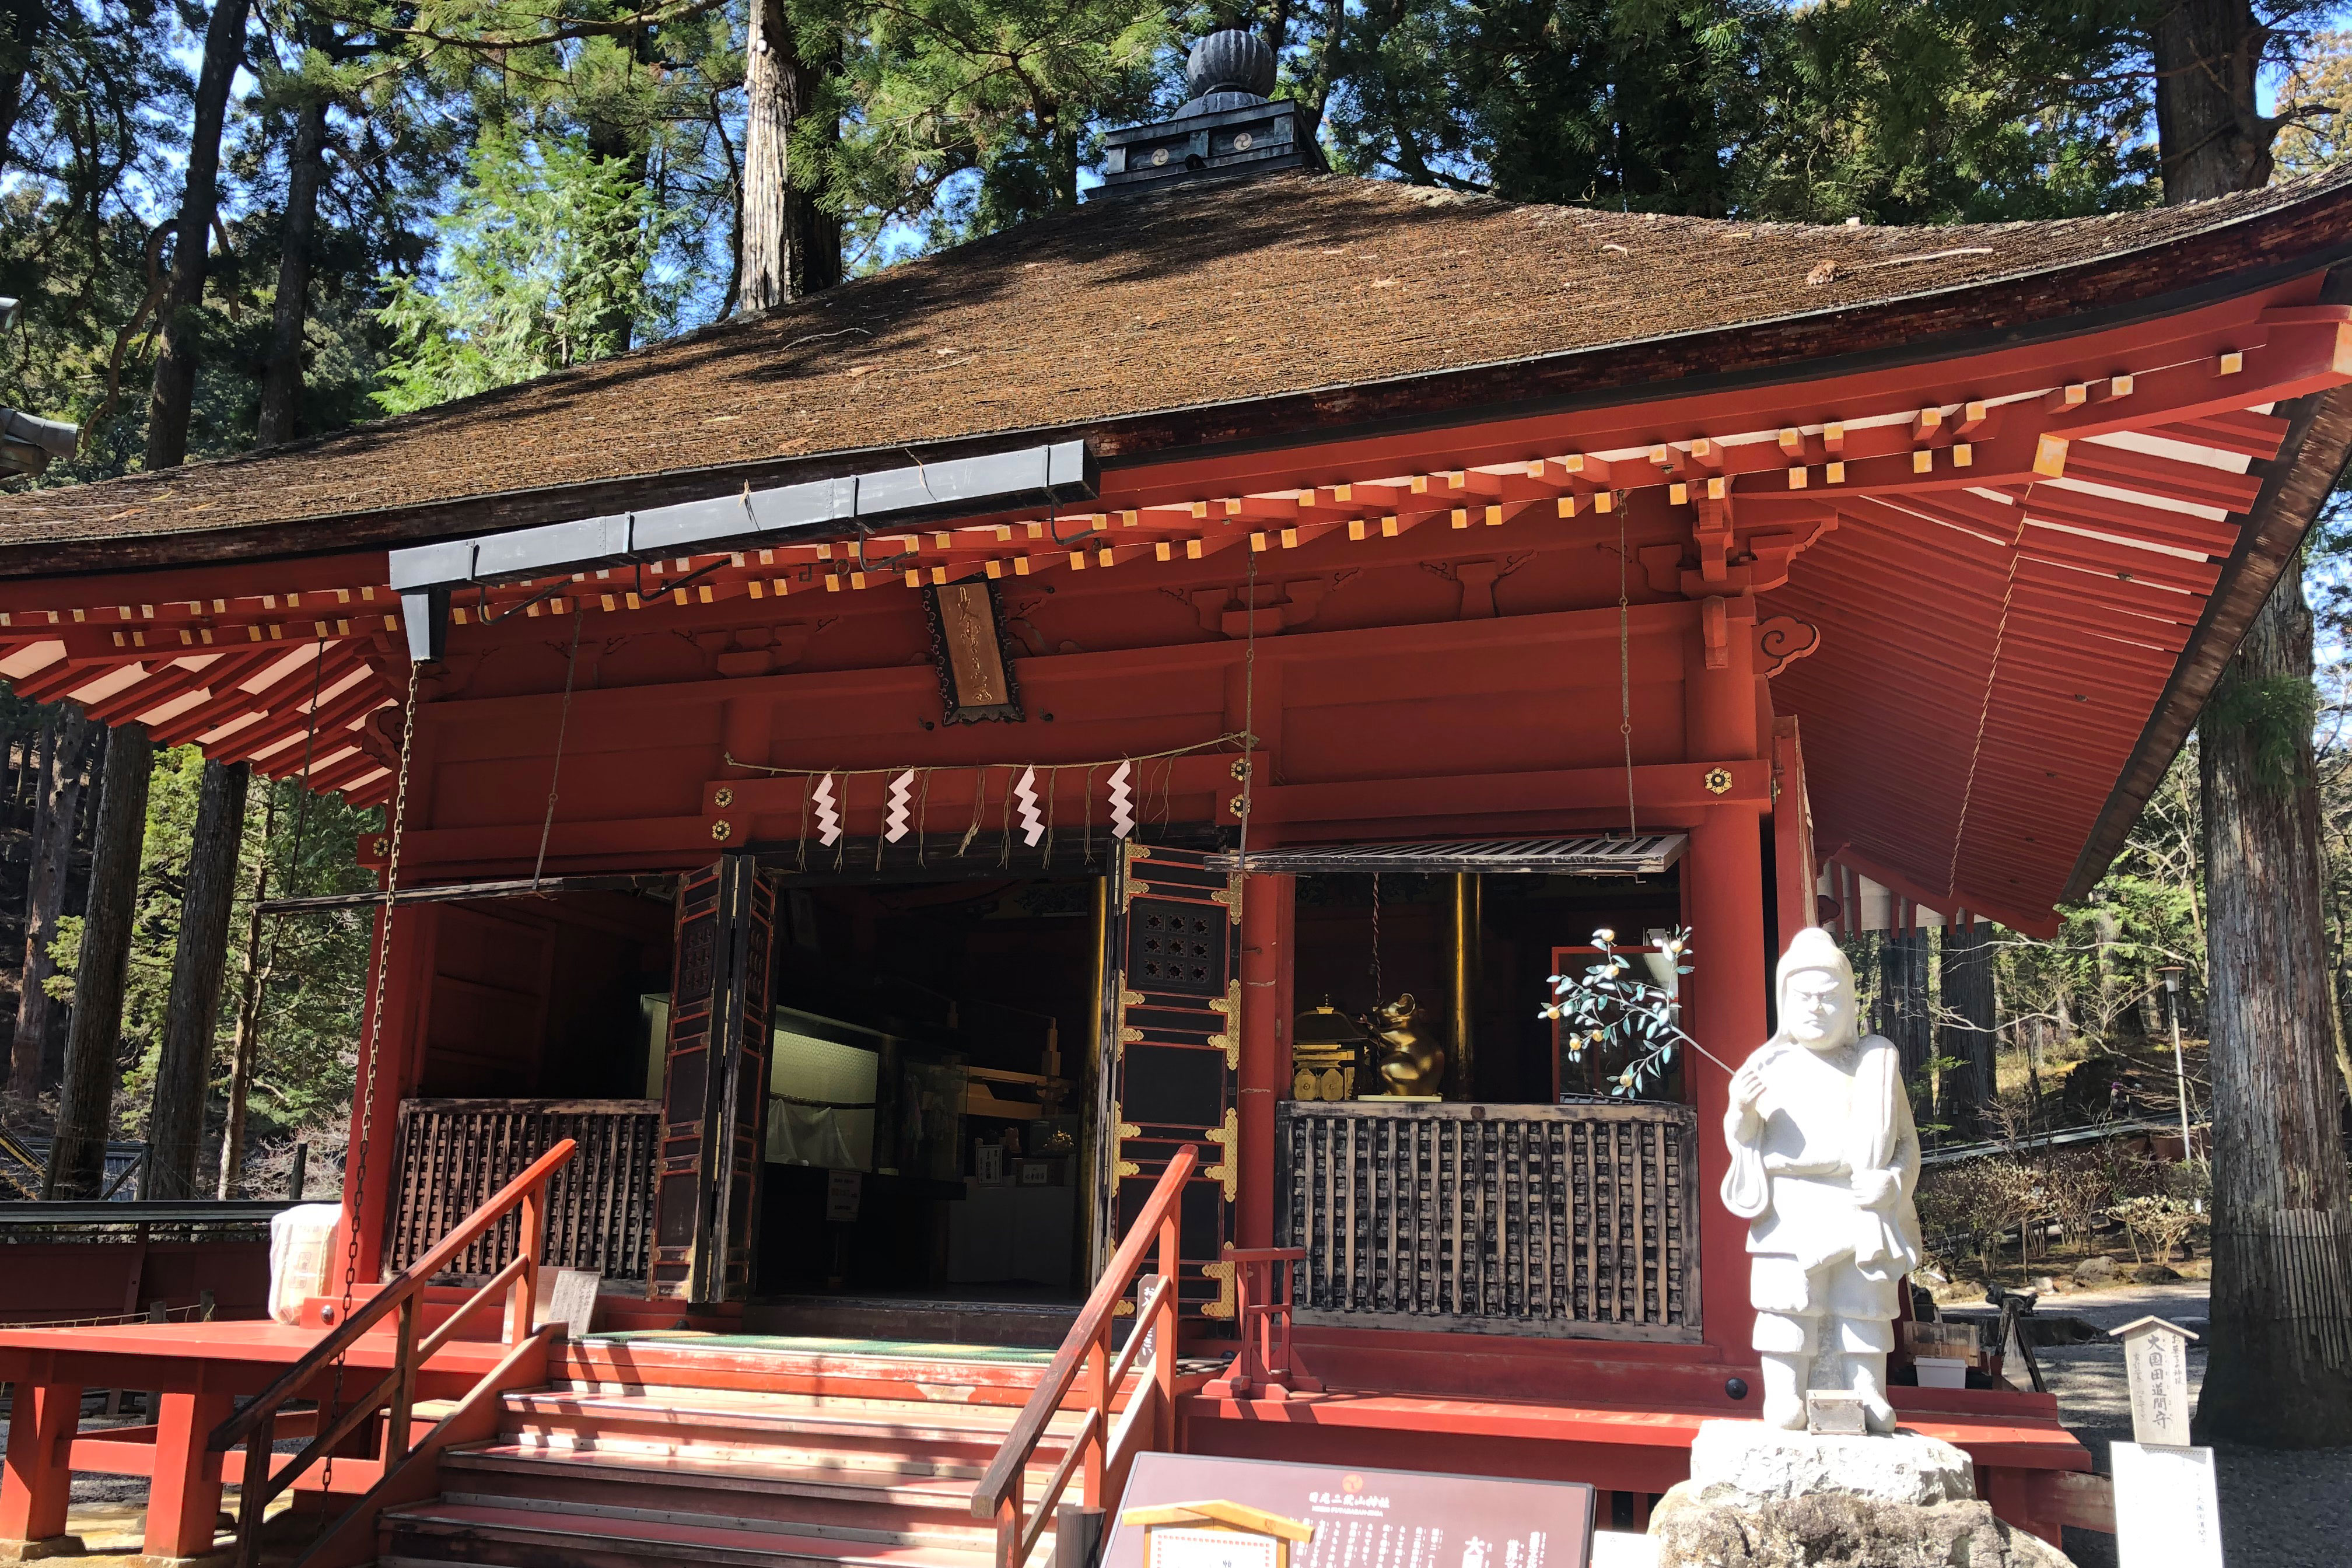 修建于1745年，供奉着在日本被广泛信仰的招福之神“大黑天（摩诃迦罗）”。在日光二荒山神社里，则被称作为“招福大国(黑)（Lucky Daikoku）”享有盛名。<br /><br />大黑天是佛教七福神之一，并被认为与掌管农业、商业、医疗的大已贵神是同一神祇。大已贵神在日本最早的史书《古事记》（公元712年）中也有记载。在到明治时代(1868年-1912年)之前，日本的佛教与神道相互融合，日光二荒山神社也就同时供奉着大已贵神和大黑天两位神明。<br /><br />大国殿內除了供参拜的供奉处之外，还摆放着各种大黑天的画像。<br /><br />立于入口右侧的石像是田道间守。田道间守是大和时代（250年-719年）传说中的人物，据说 “神仙果”就是由他受命带回日本的。这尊石像右手所持的橘枝是柑橘类的水果。他也被奉为点心之神。